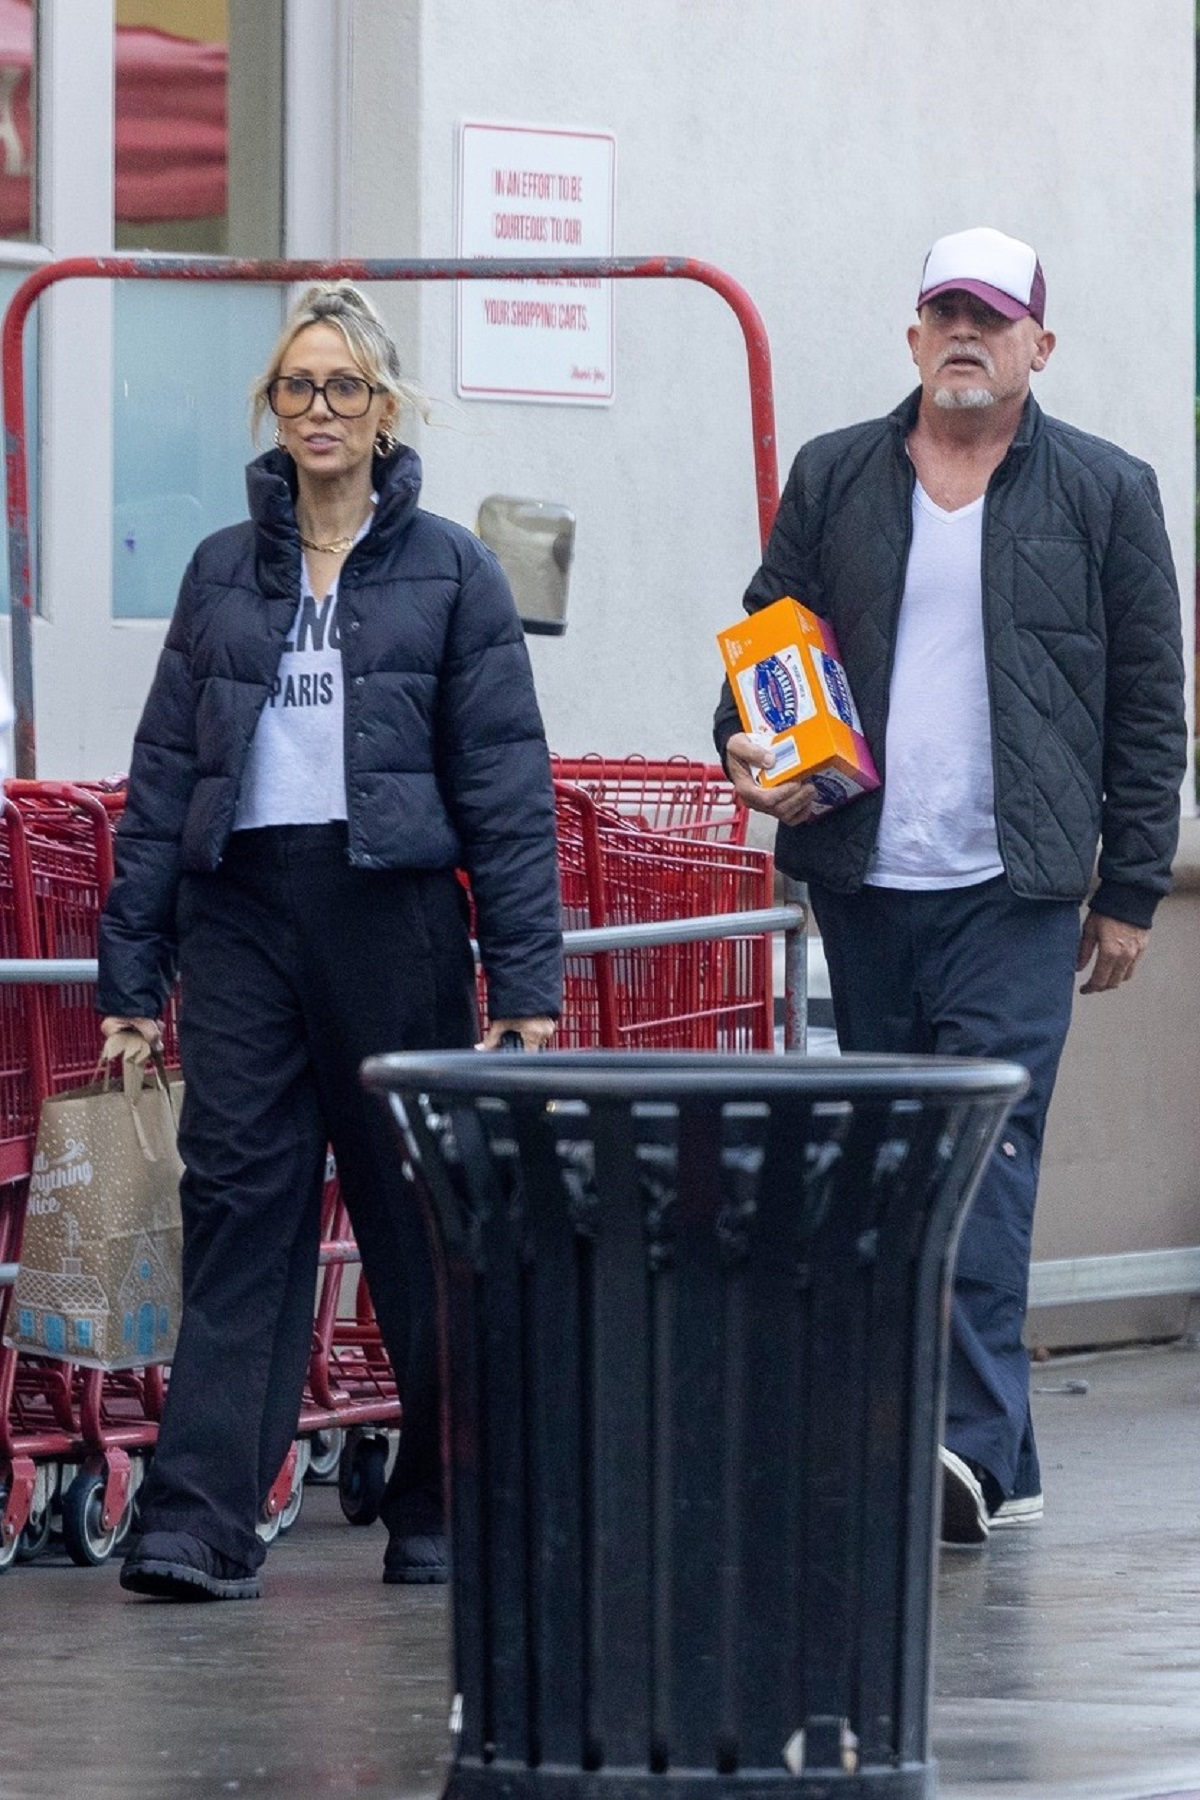 Tish Cyrus la cumpărături cu iubitul ei, Dominic Purcell